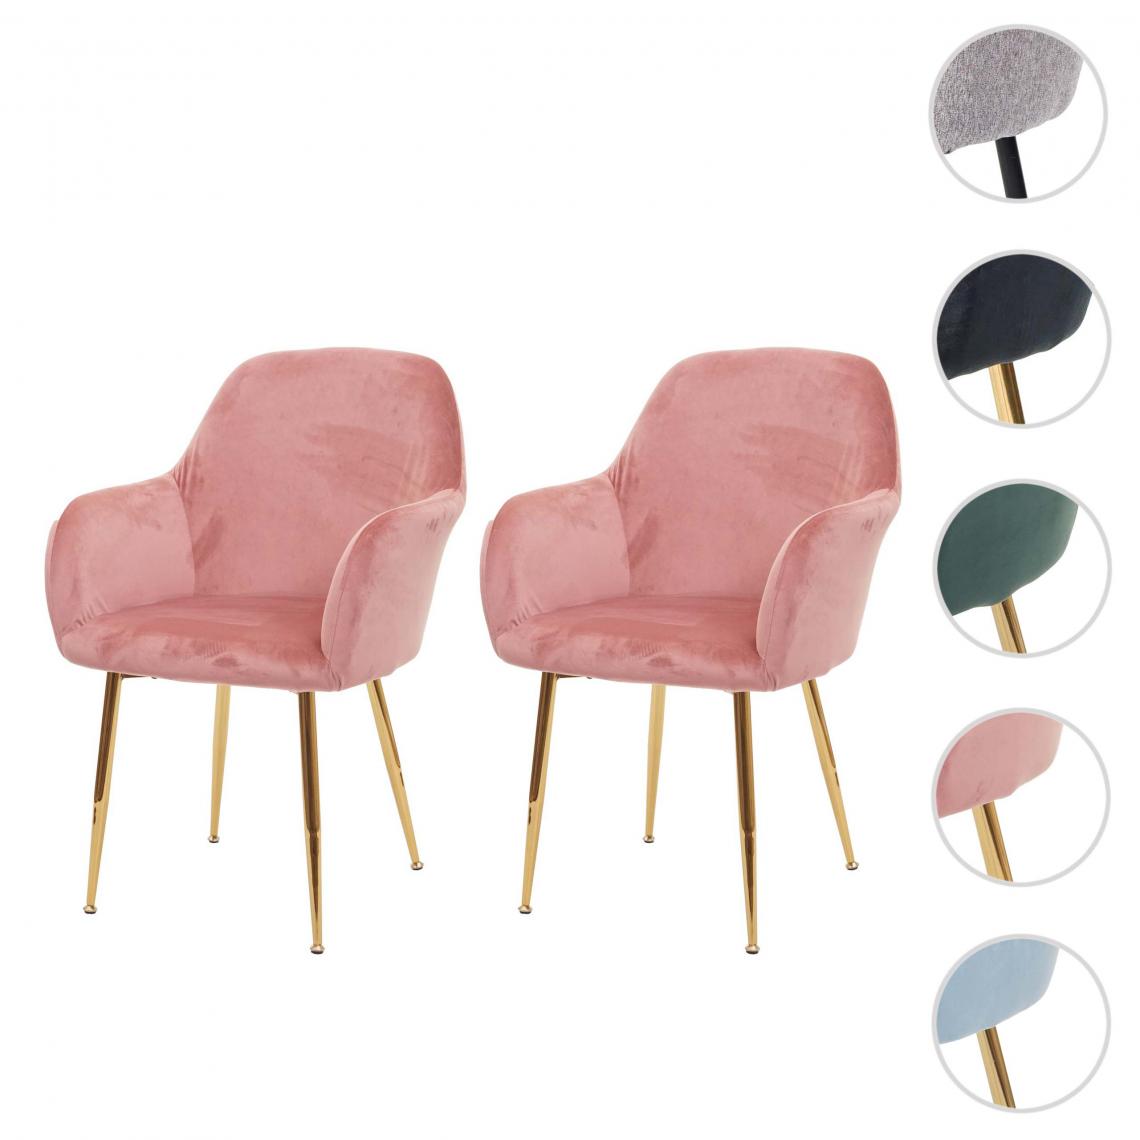 Mendler - 2x chaise de salle à manger HWC-F18, chaise de cuisine, design rétro ~ velours vieux rose, pieds dorés - Chaises